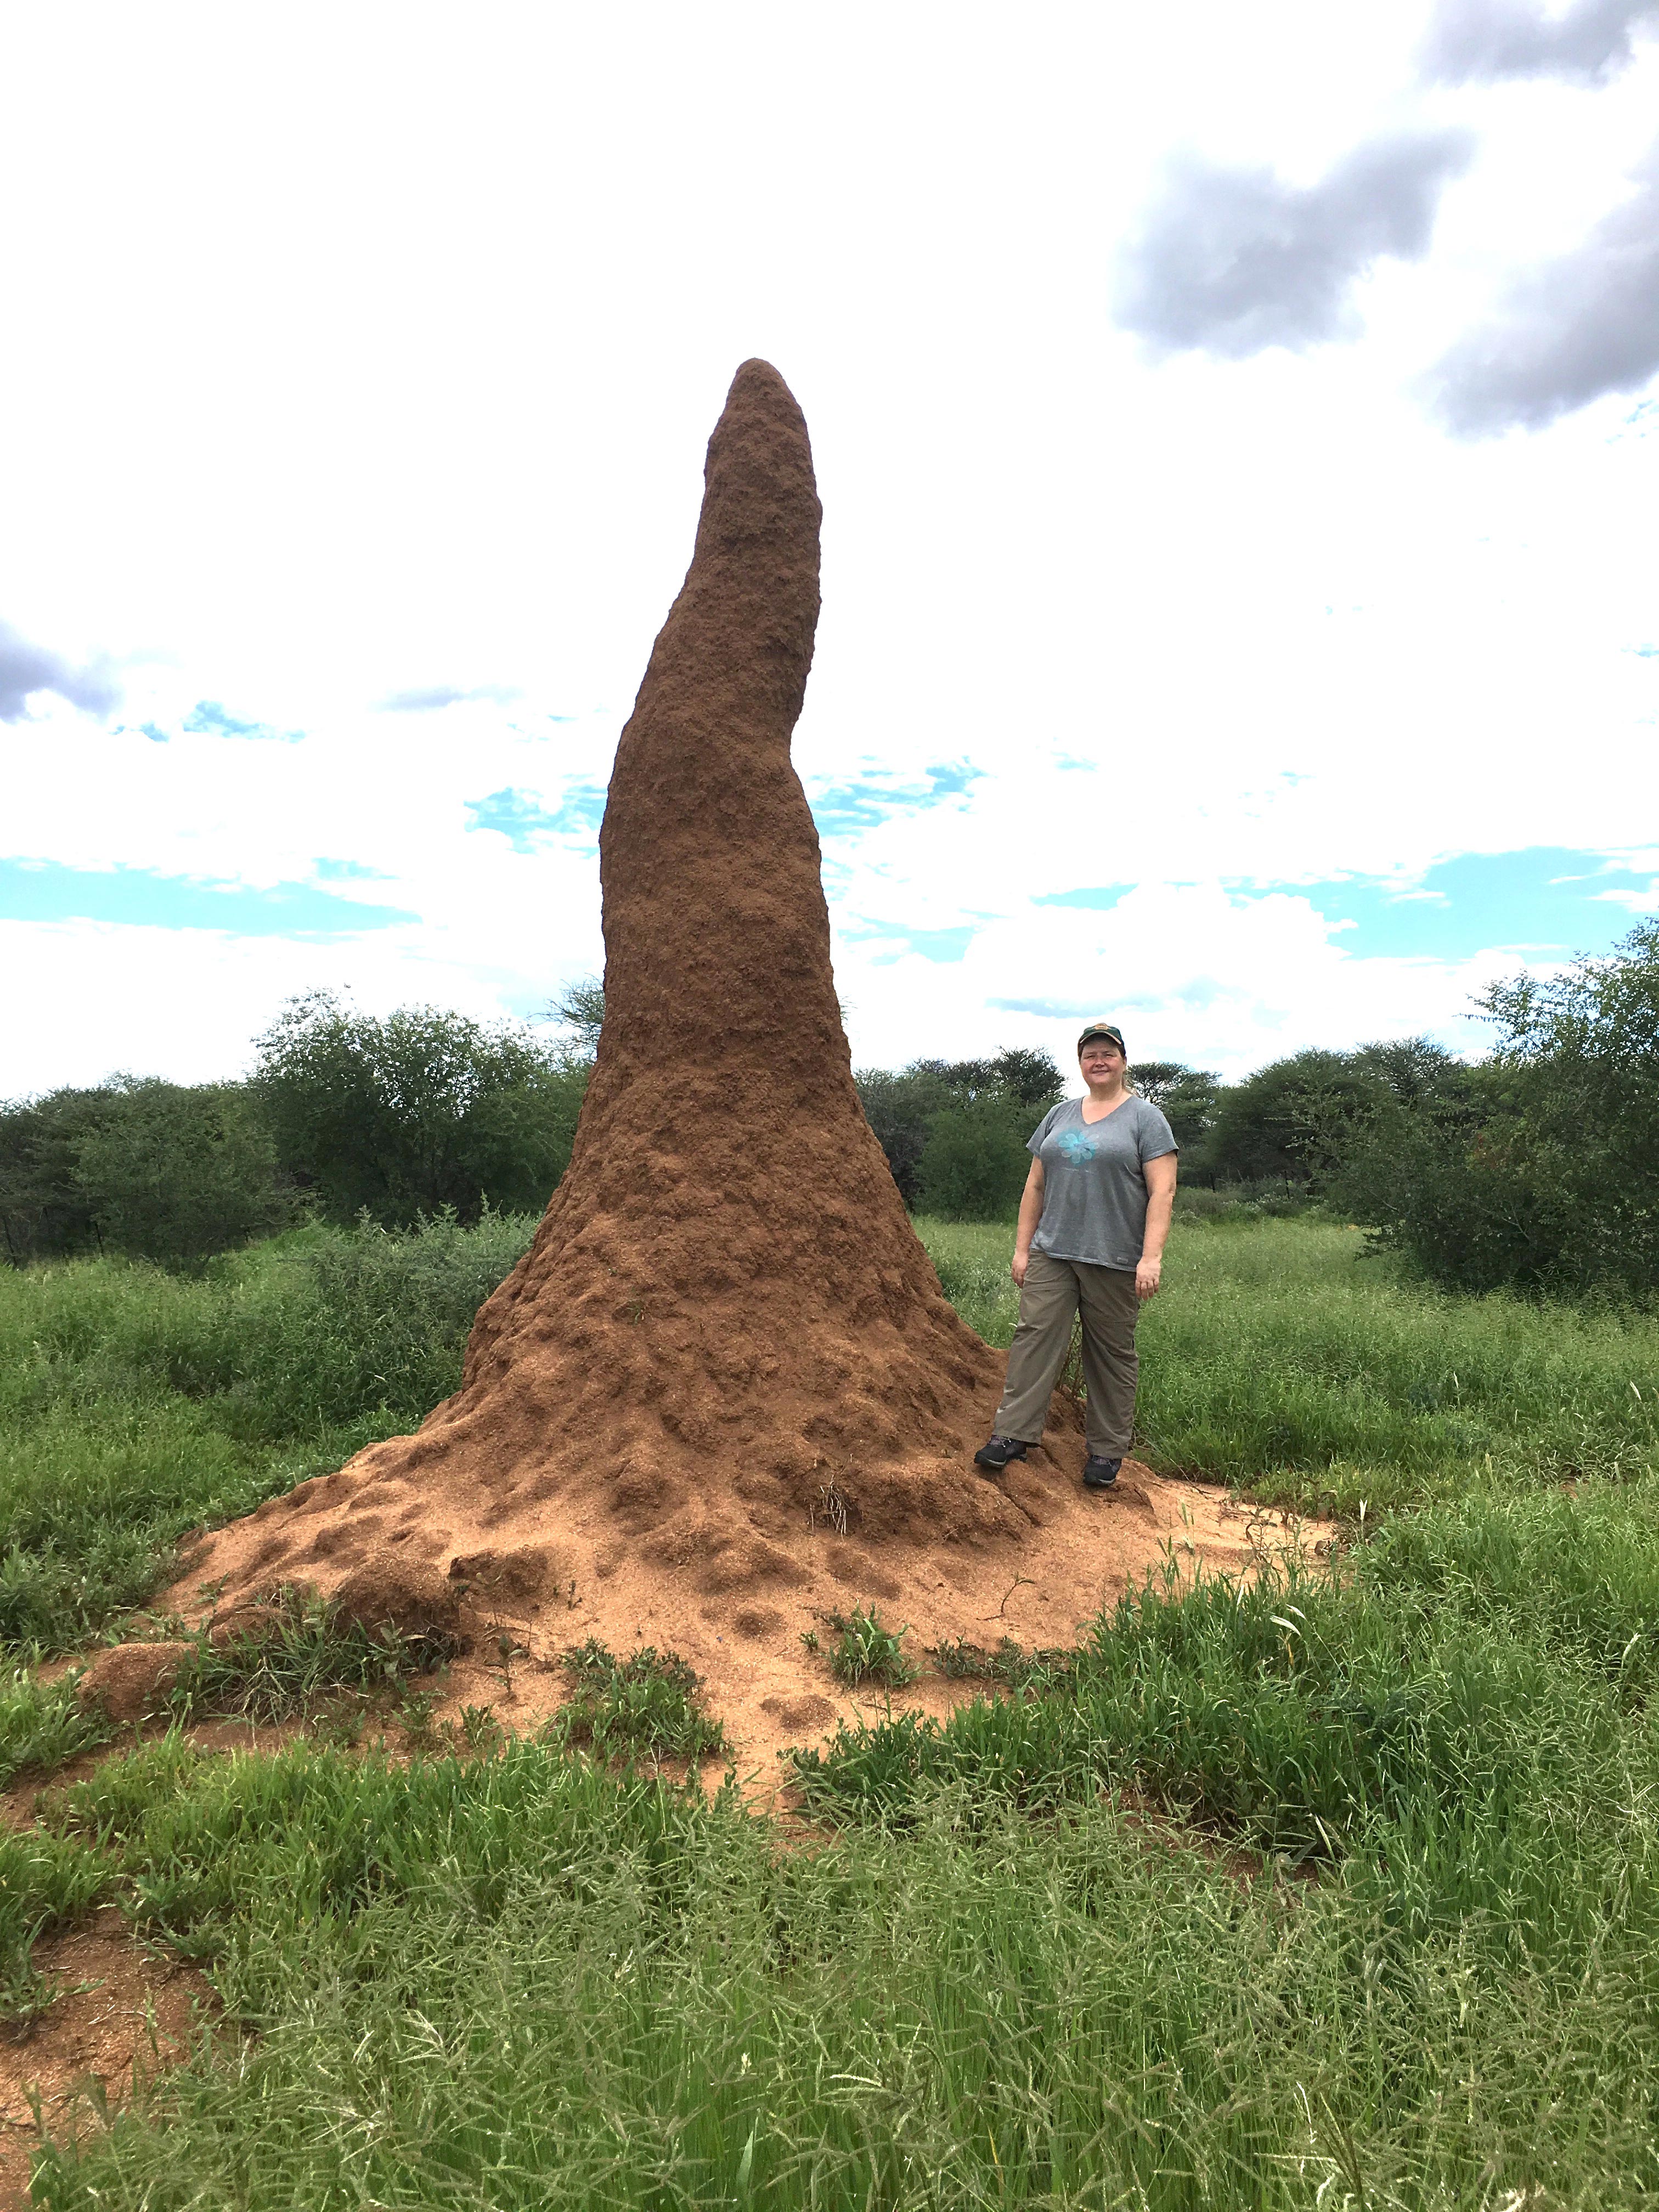 Andrea Surovek at Termite Mound